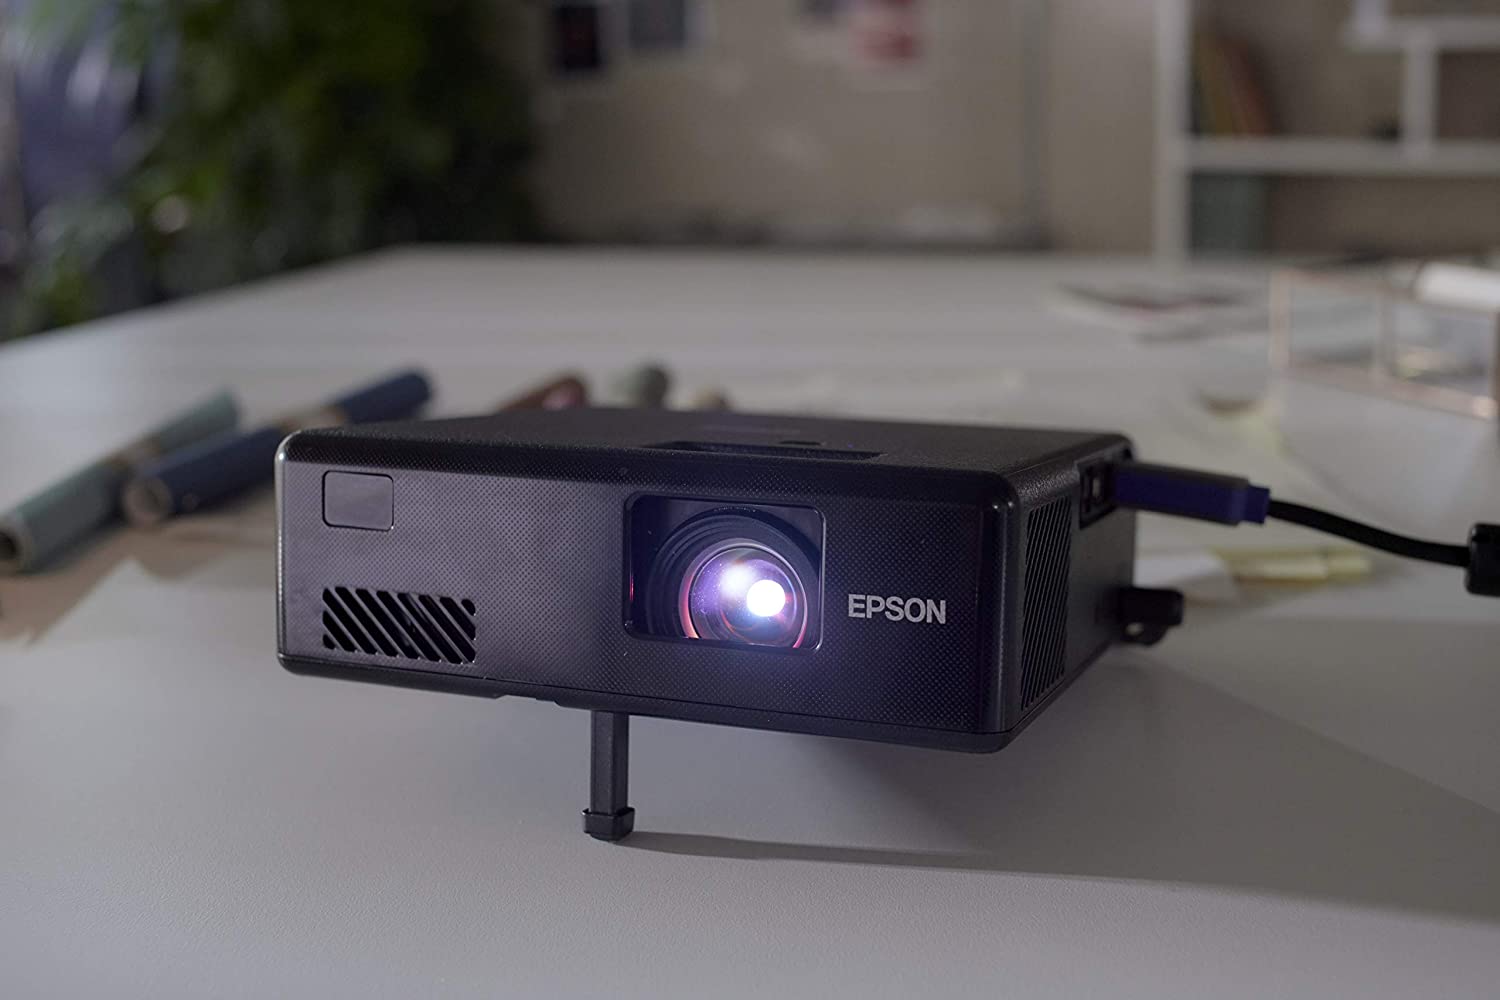 ویدئو پروژکتور اپسون مدل Epson EF-11 3LCD - ارسال 10 الی 15 روز کاری